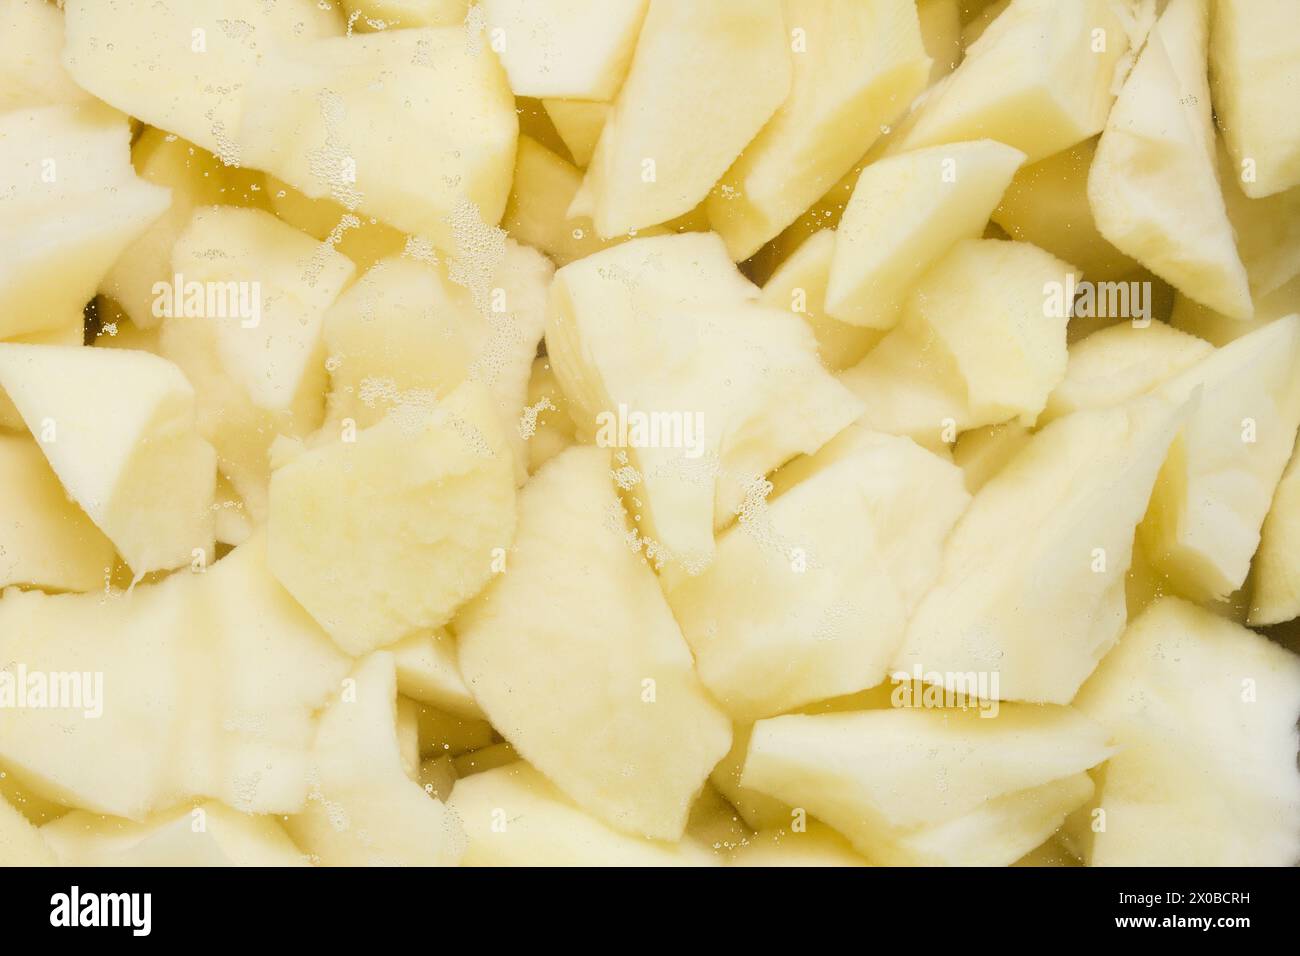 Primo piano di patate crude appena tagliate con piccole bollicine, pronte per la cottura. Preparazione degli alimenti. Foto Stock